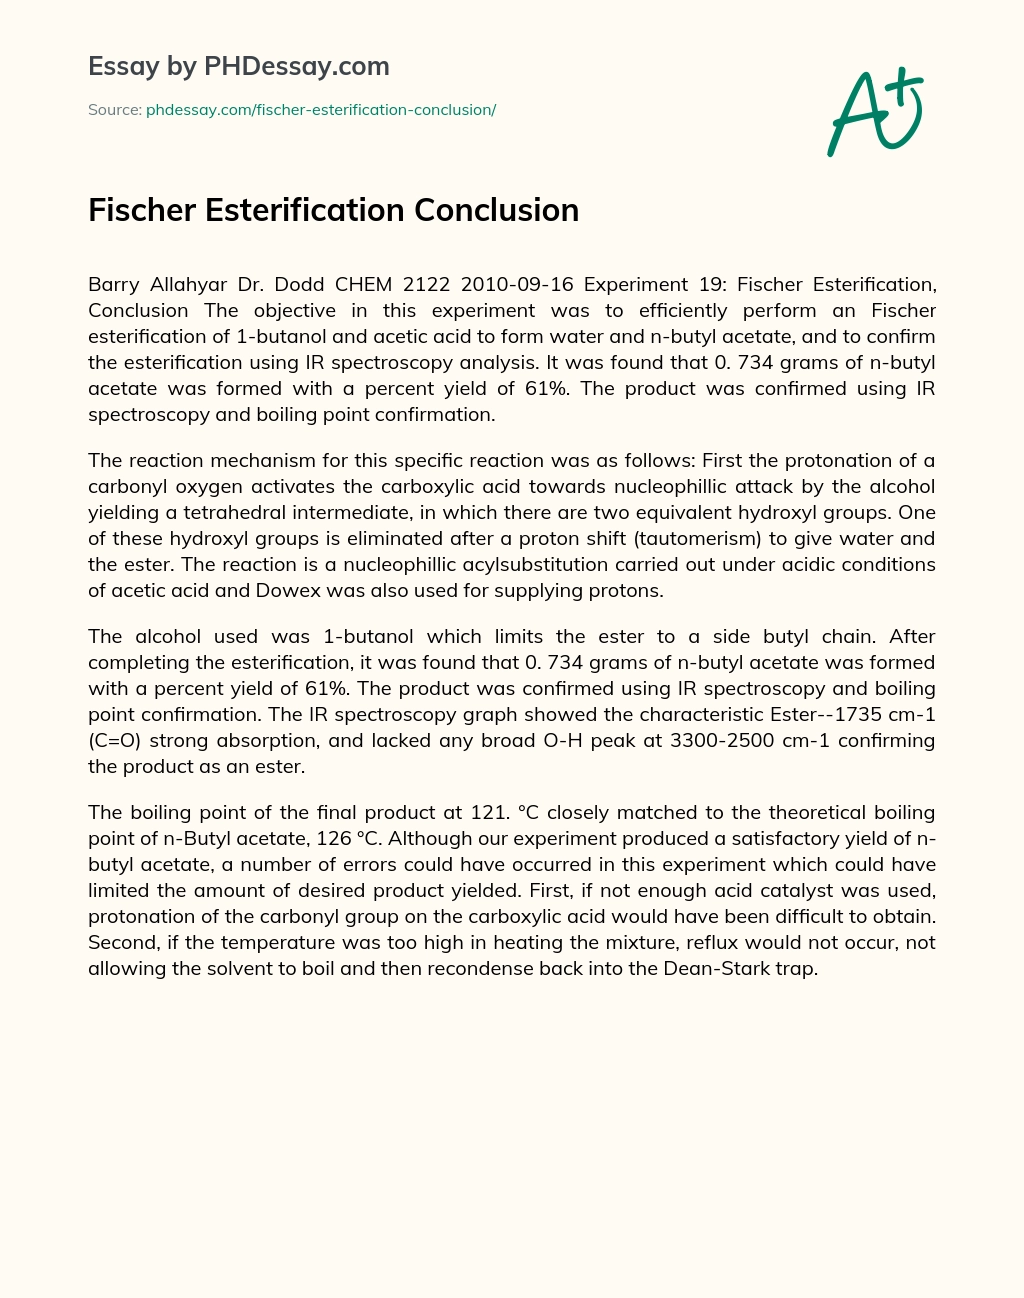 Fischer Esterification Conclusion essay